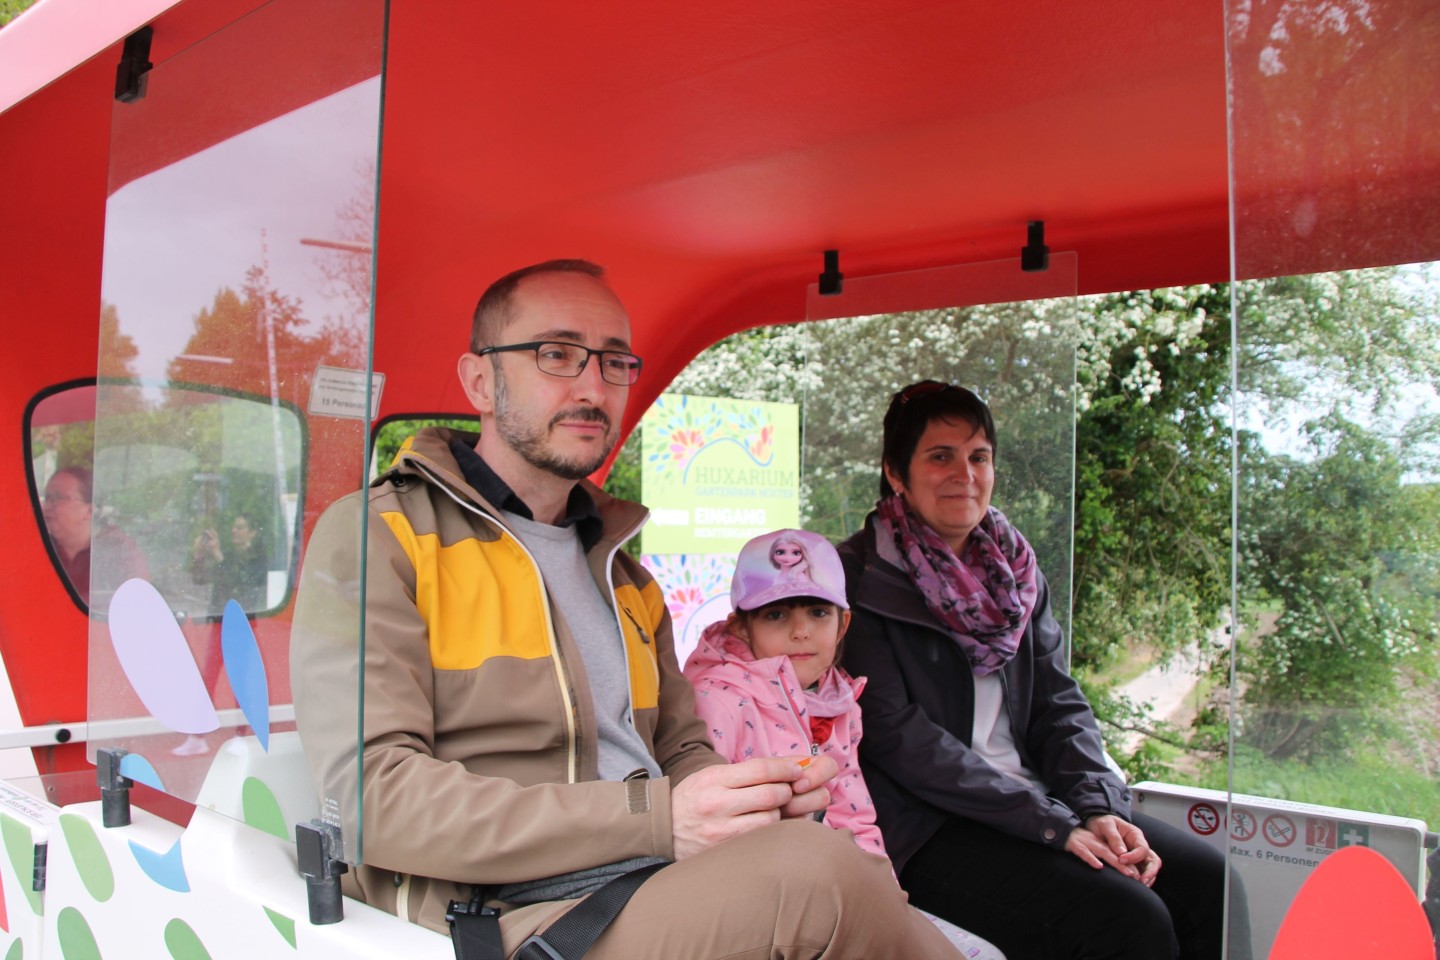 Foto: Jens, Lara (5) und Sabrina Pforte kommen aus Weimar und genossen eine Rundfahrt mit der Bimmelbahn durch den Huxarium Gartenpark Höxter.